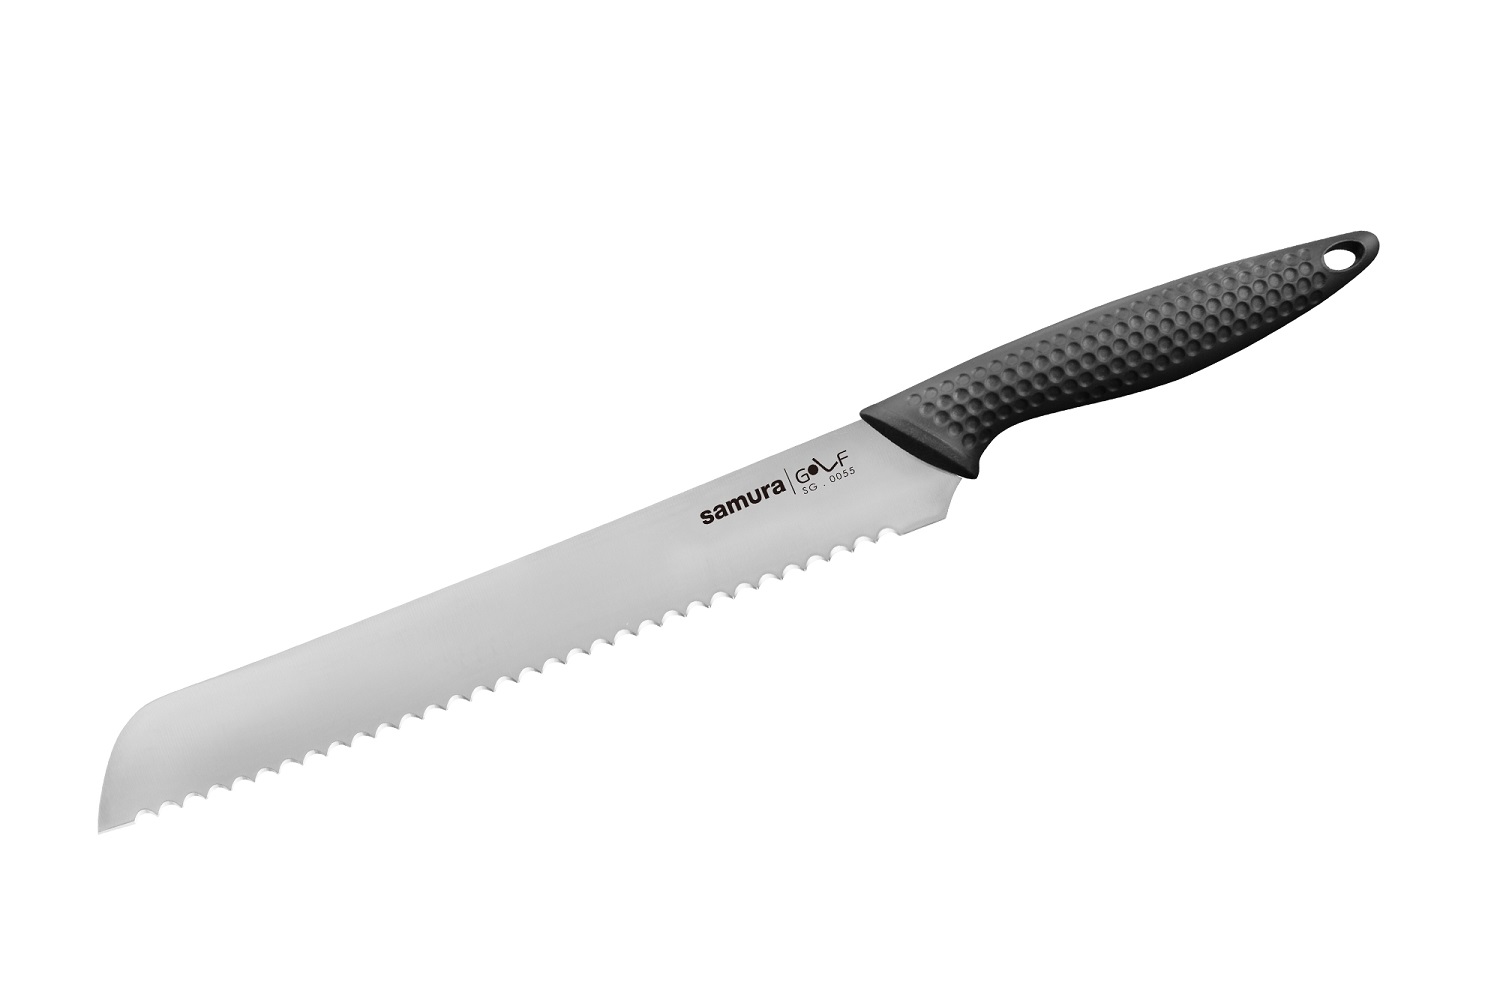 Нож Samura для хлеба Golf, 23 см, AUS-8 нож овощной golf stonewash 9 8 см sg 0010b k samura